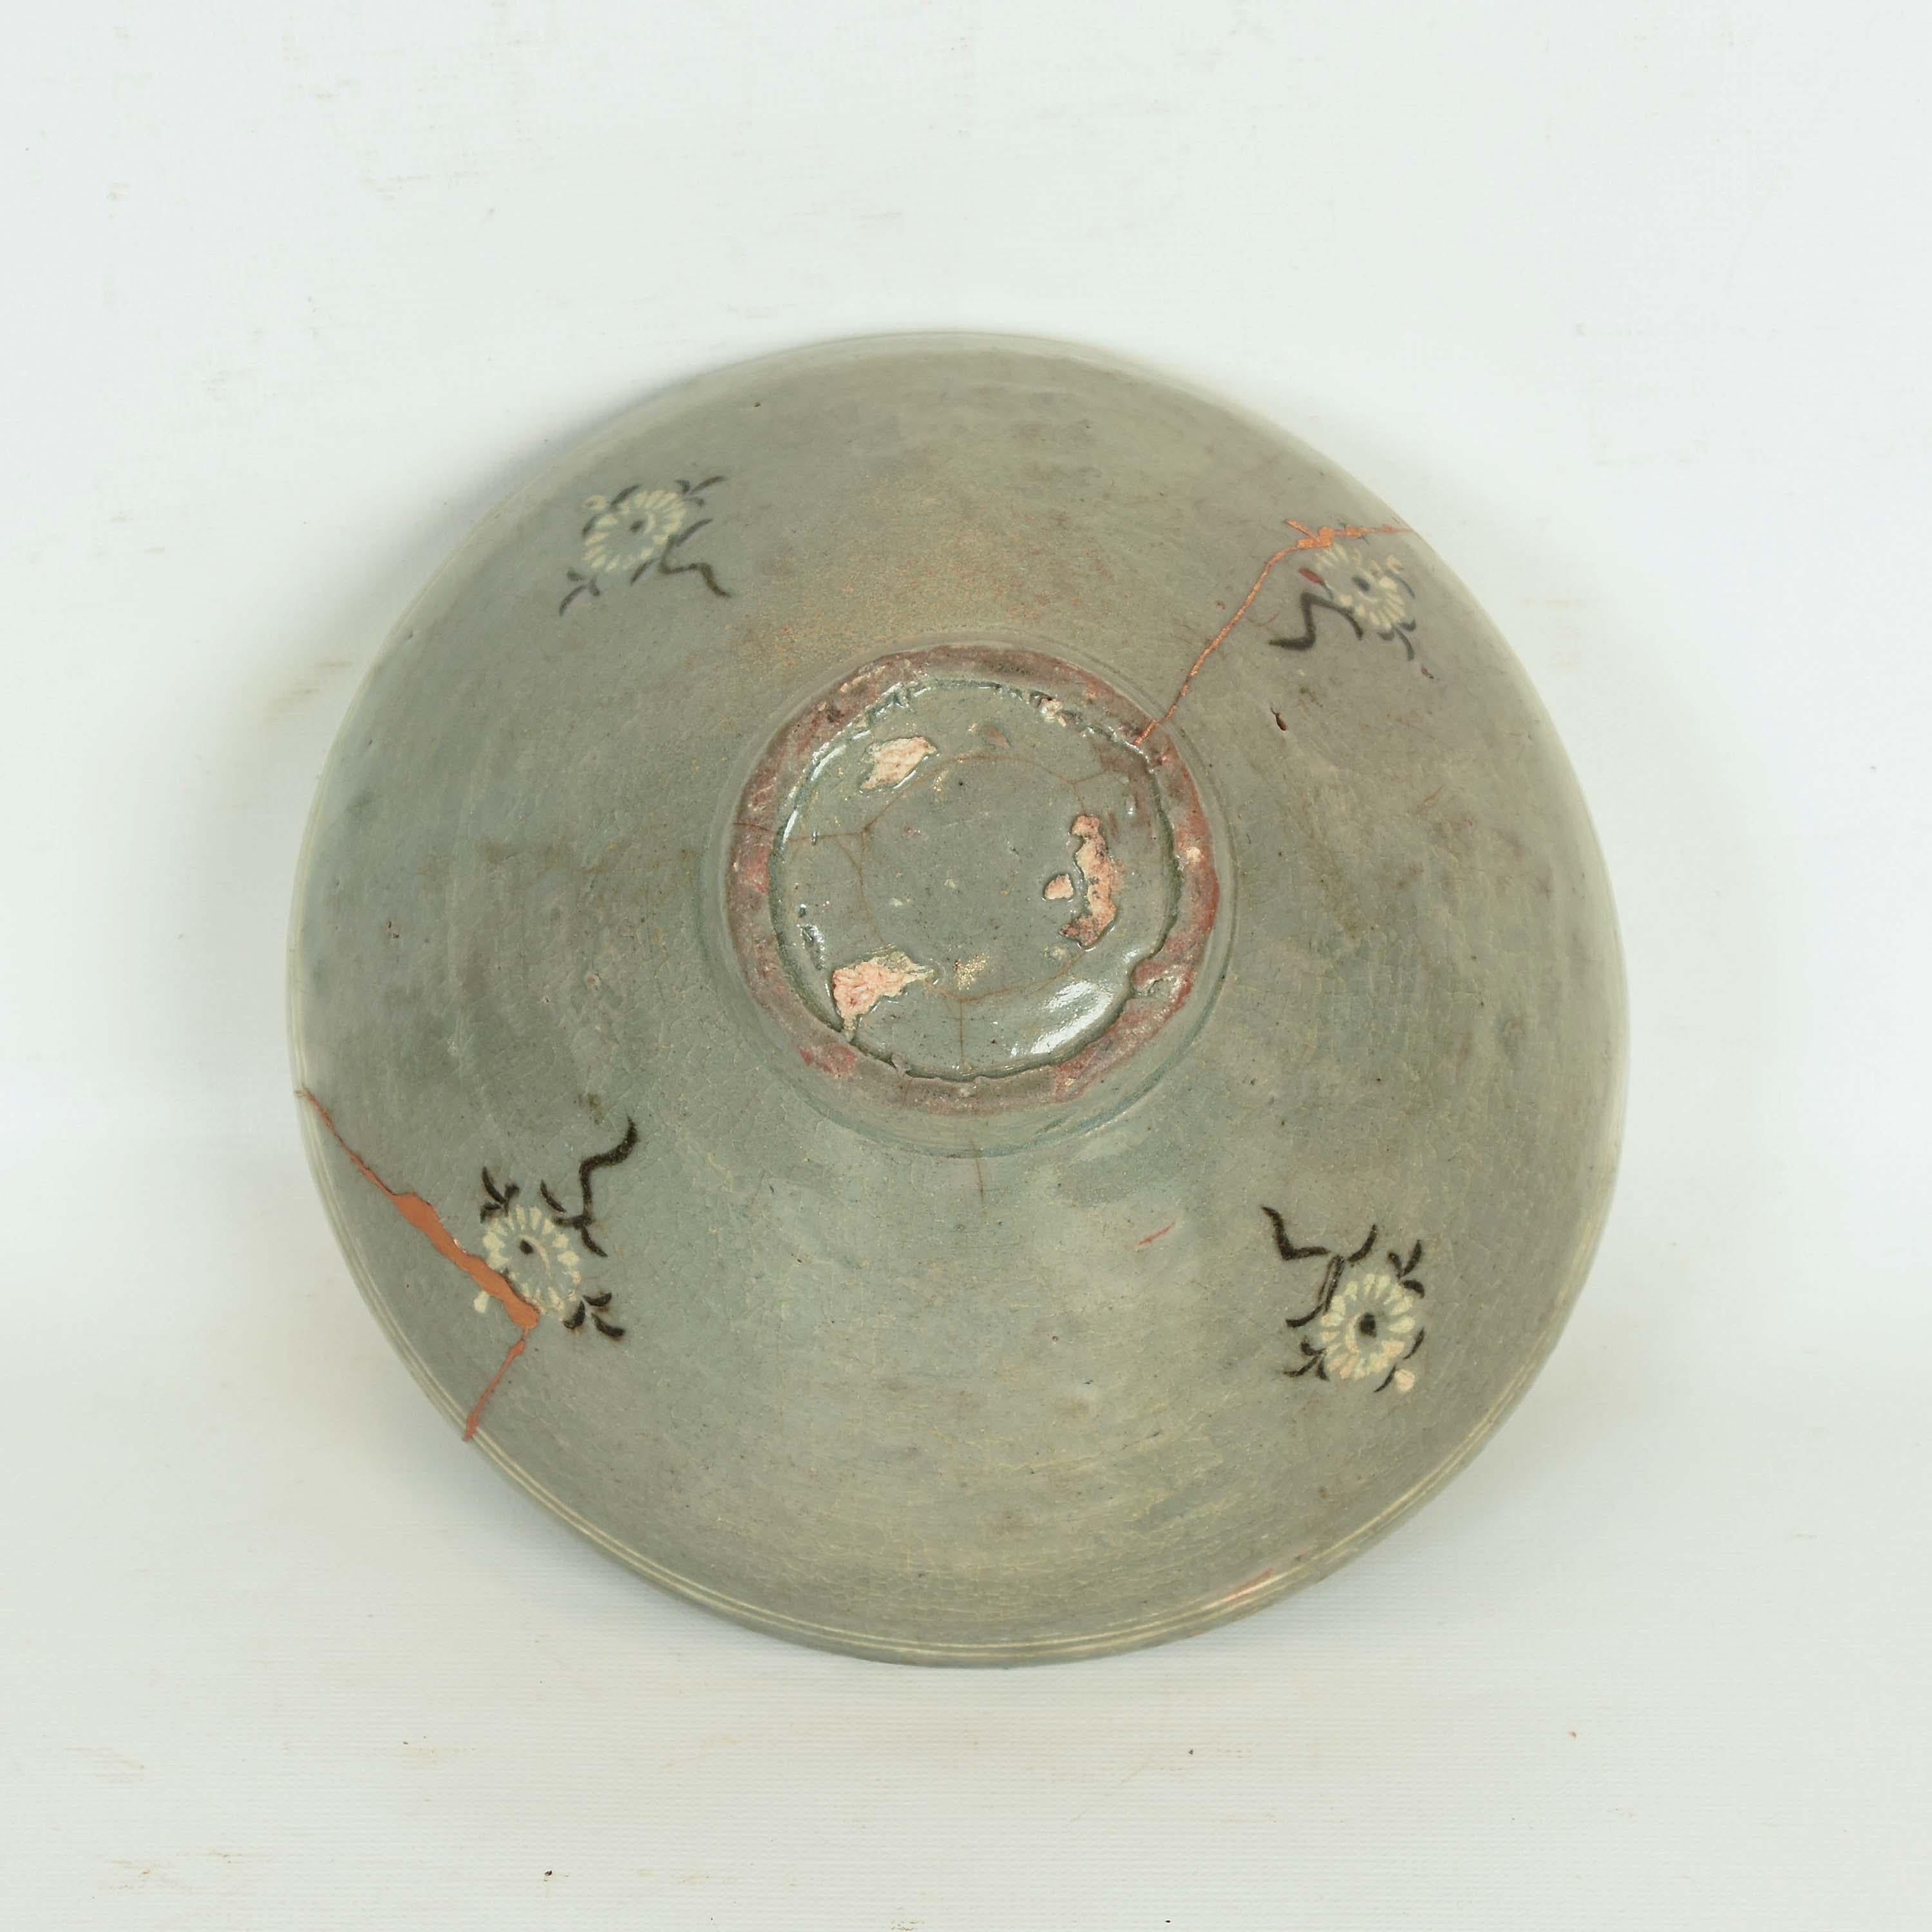 Glazed 15th Century Korean Celadon Tea Bowl with Kintsugi Repair